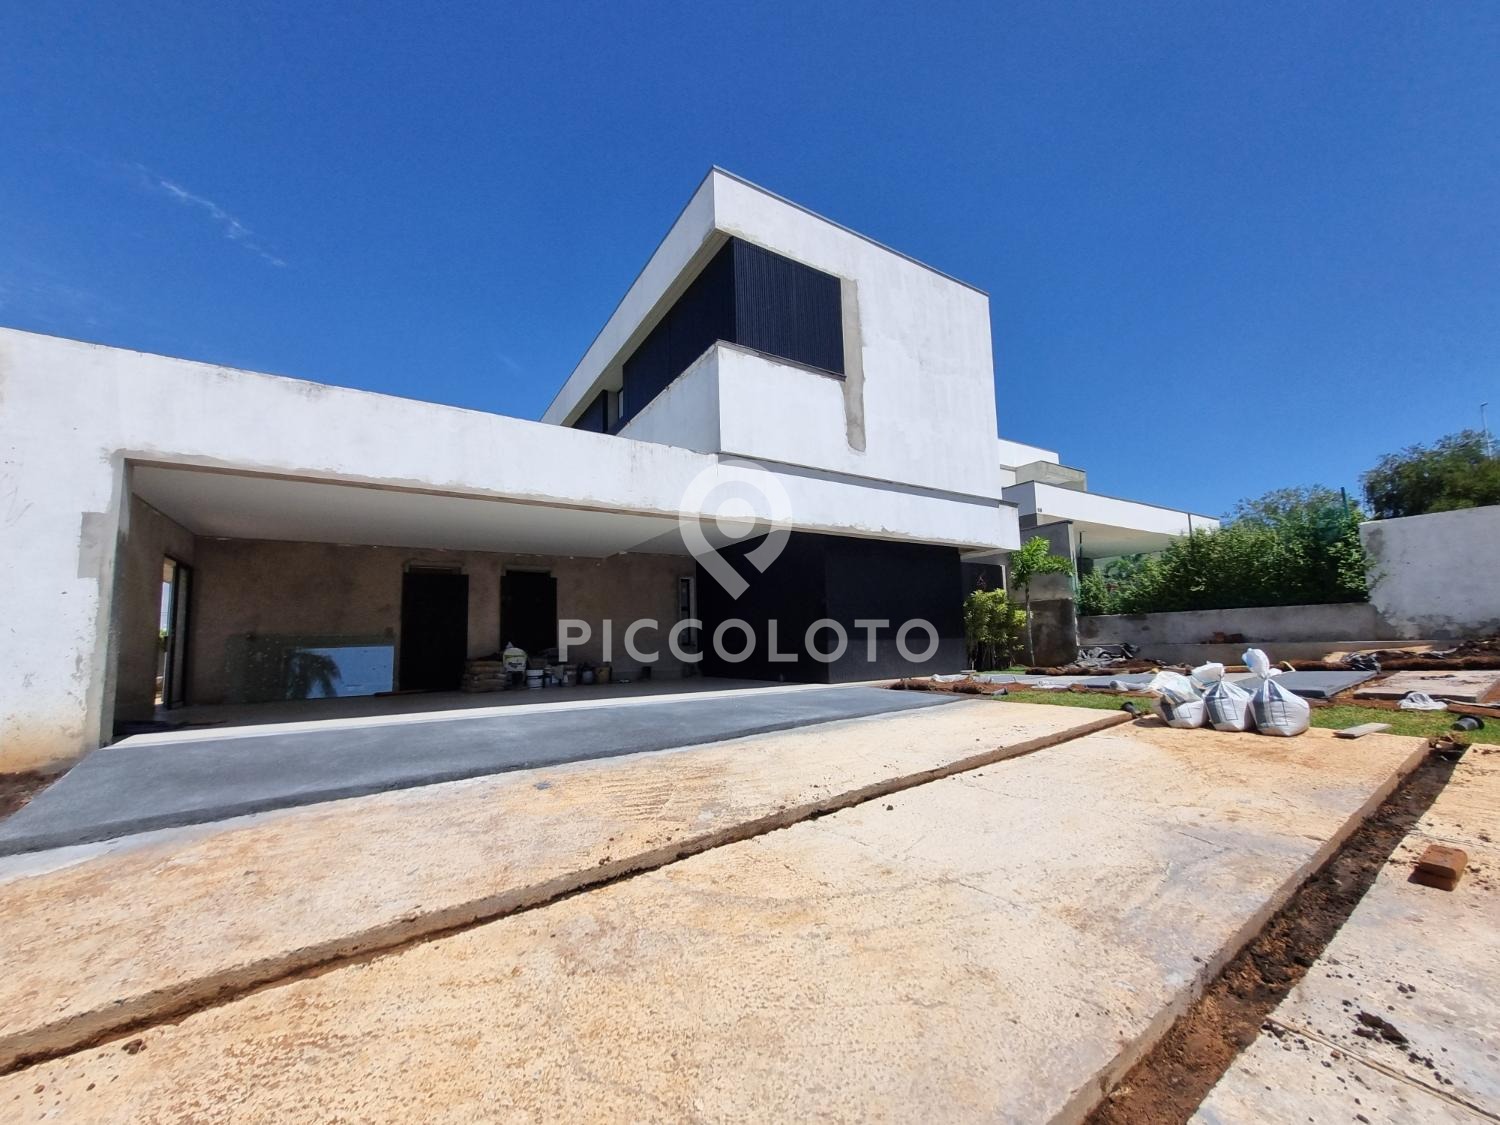 Piccoloto - Casa à venda no Loteamento Mont Blanc Residence em Campinas